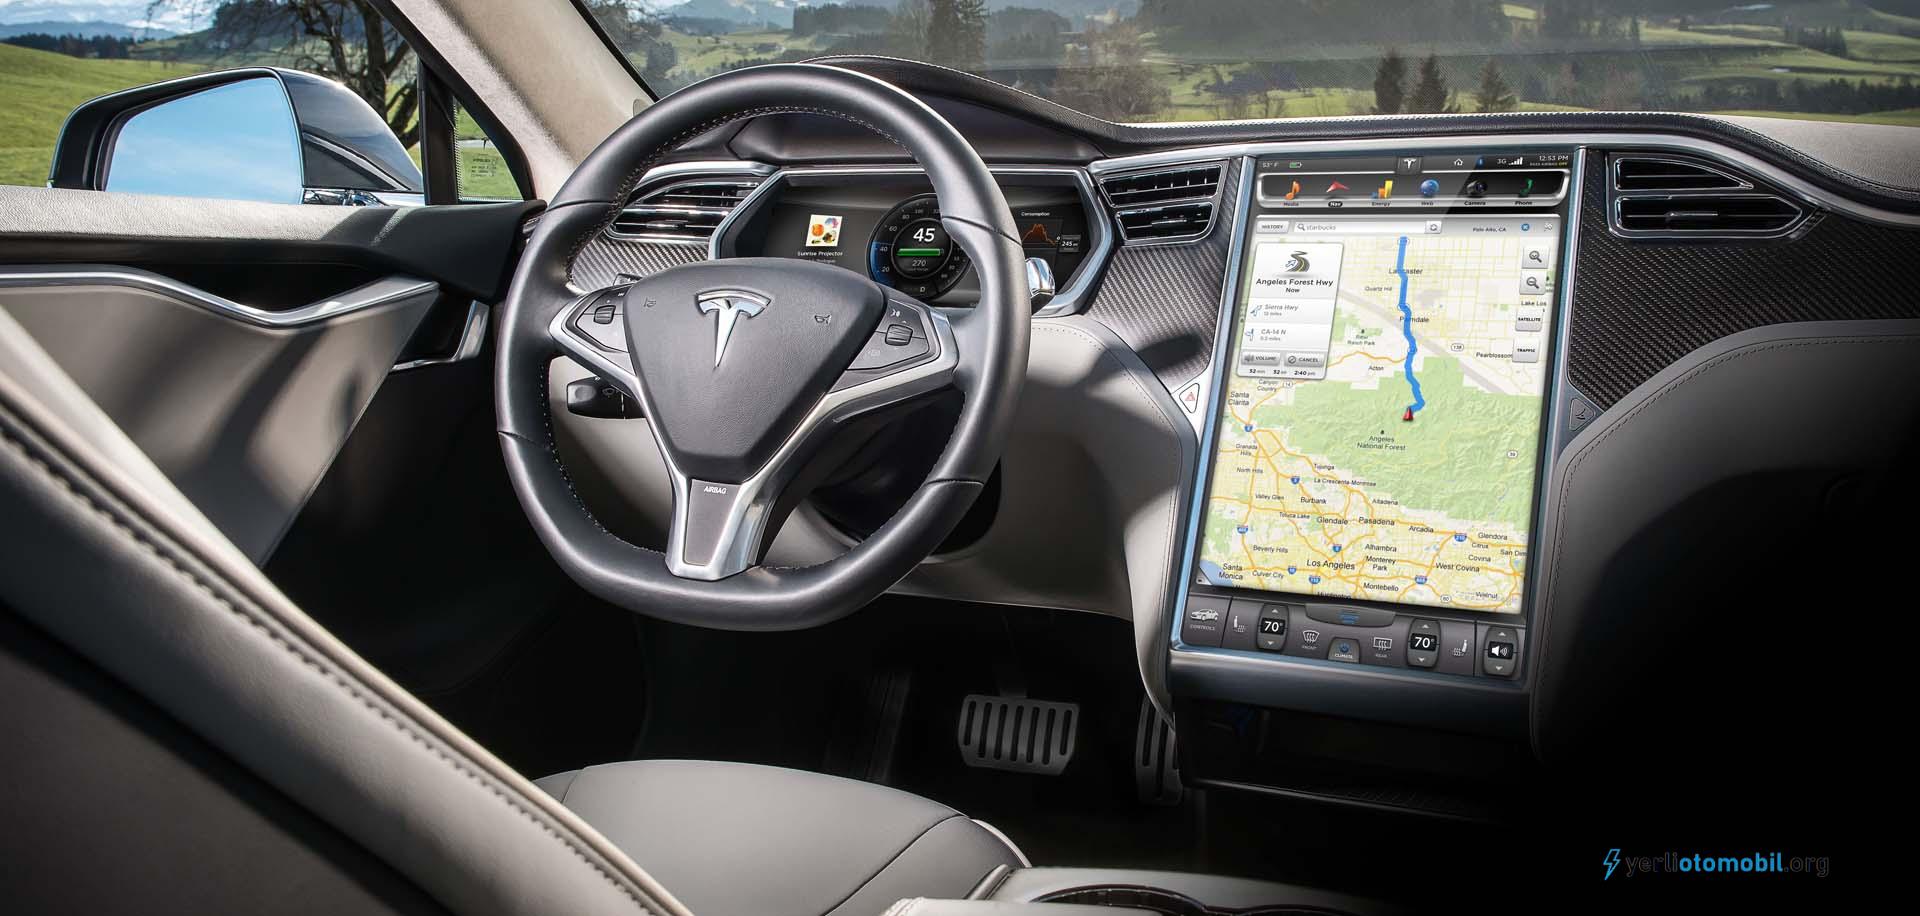 Tesla ekran sorunları için 135 Bin aracı geri çağırıyor?